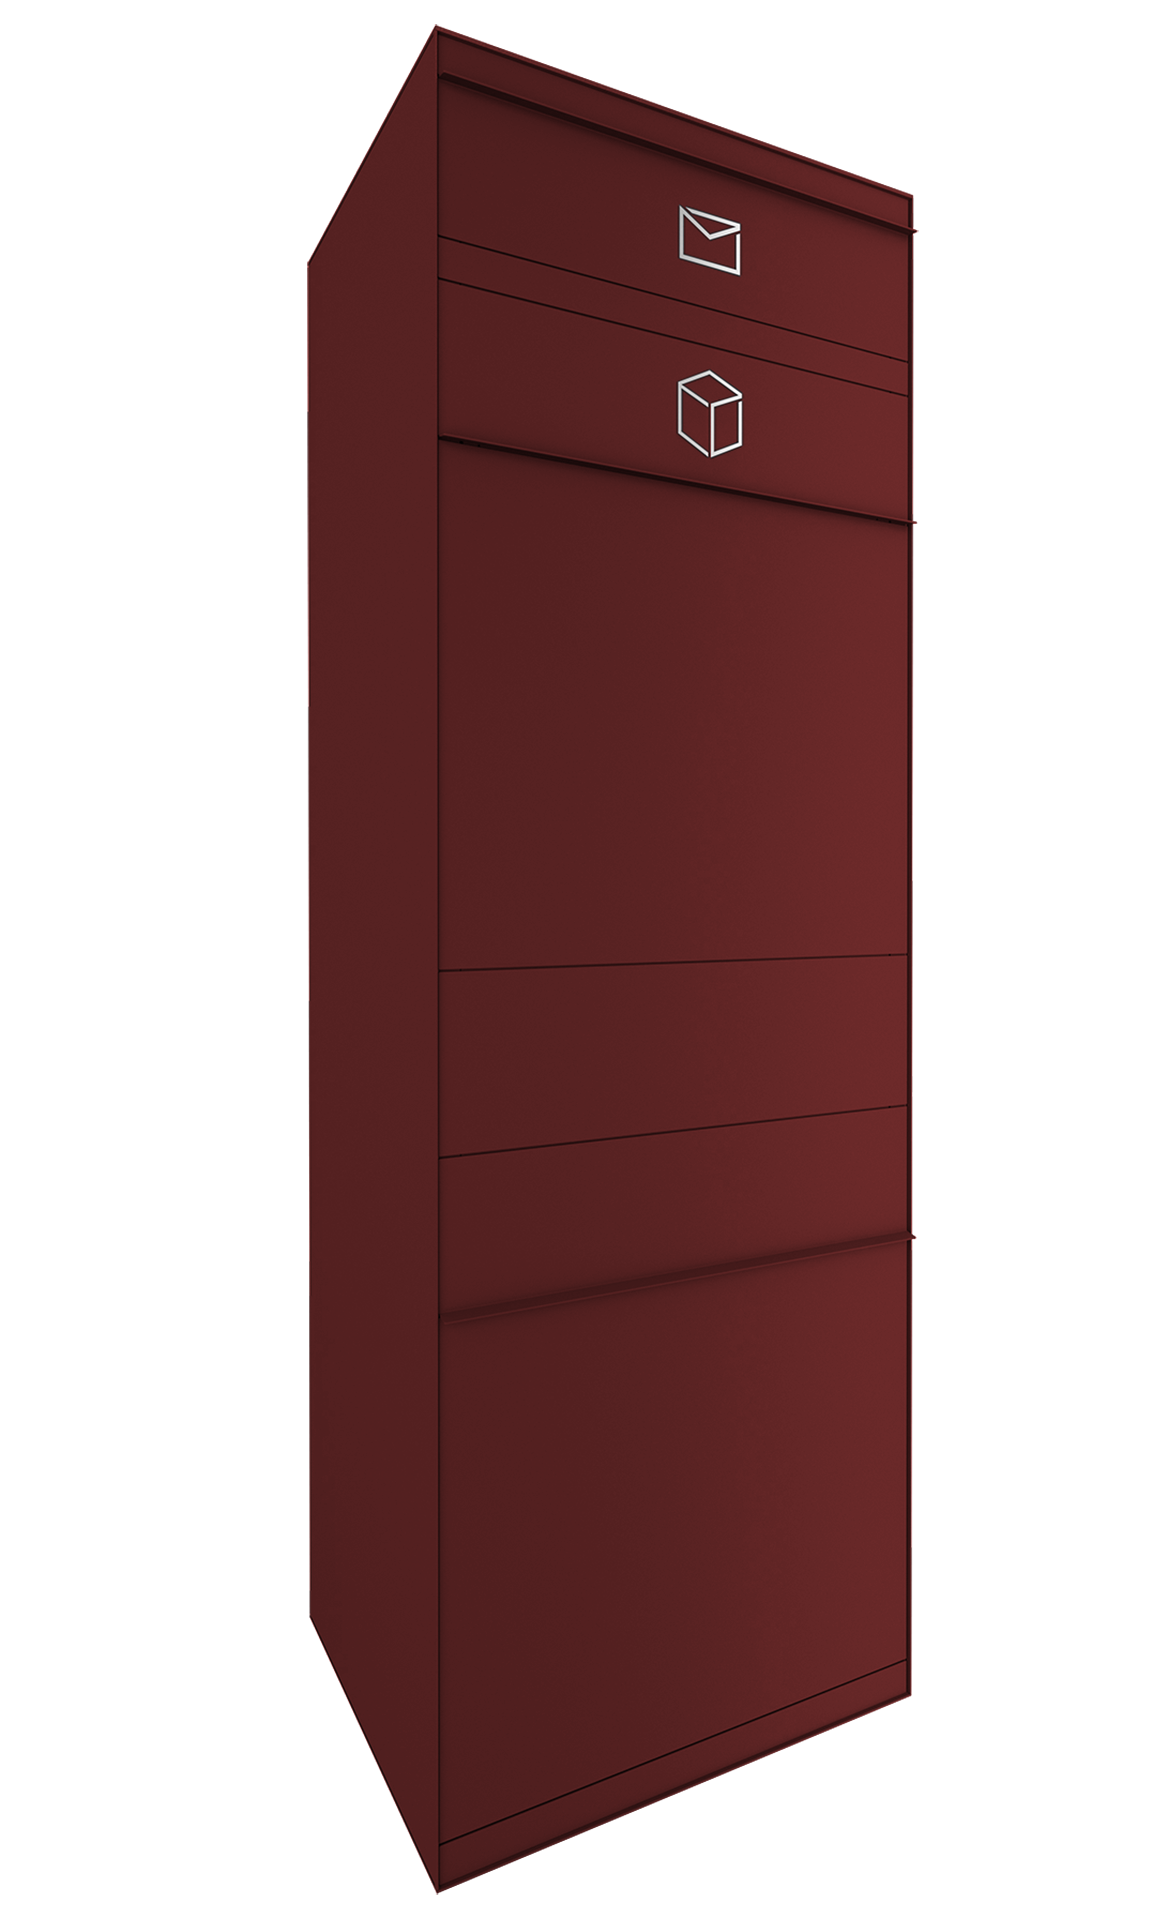 Paketbox mit Briefkasten in Wunschfarbe